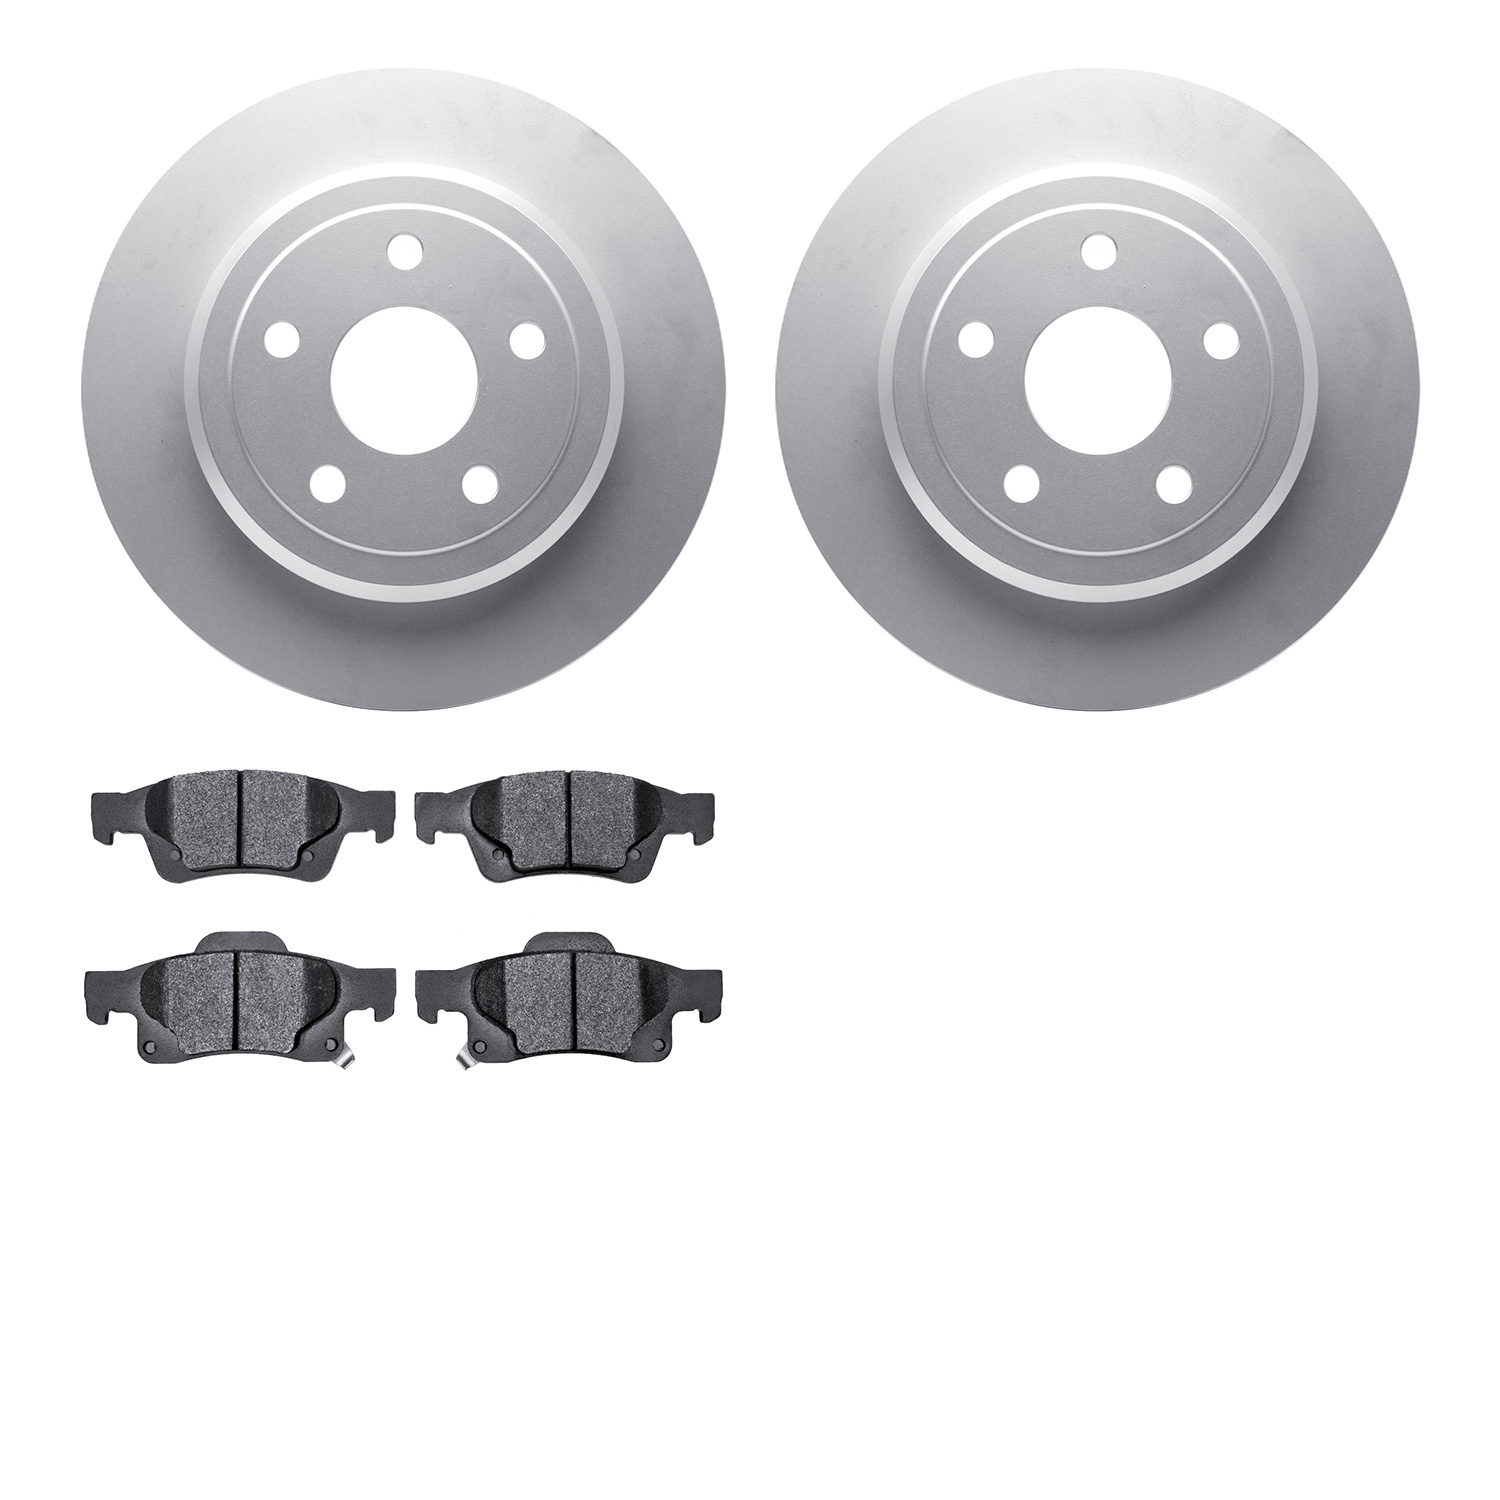 4202-42001 Geospec Brake Rotors w/Heavy-Duty Brake Pads Kit, Fits Select Mopar, Position: Rear